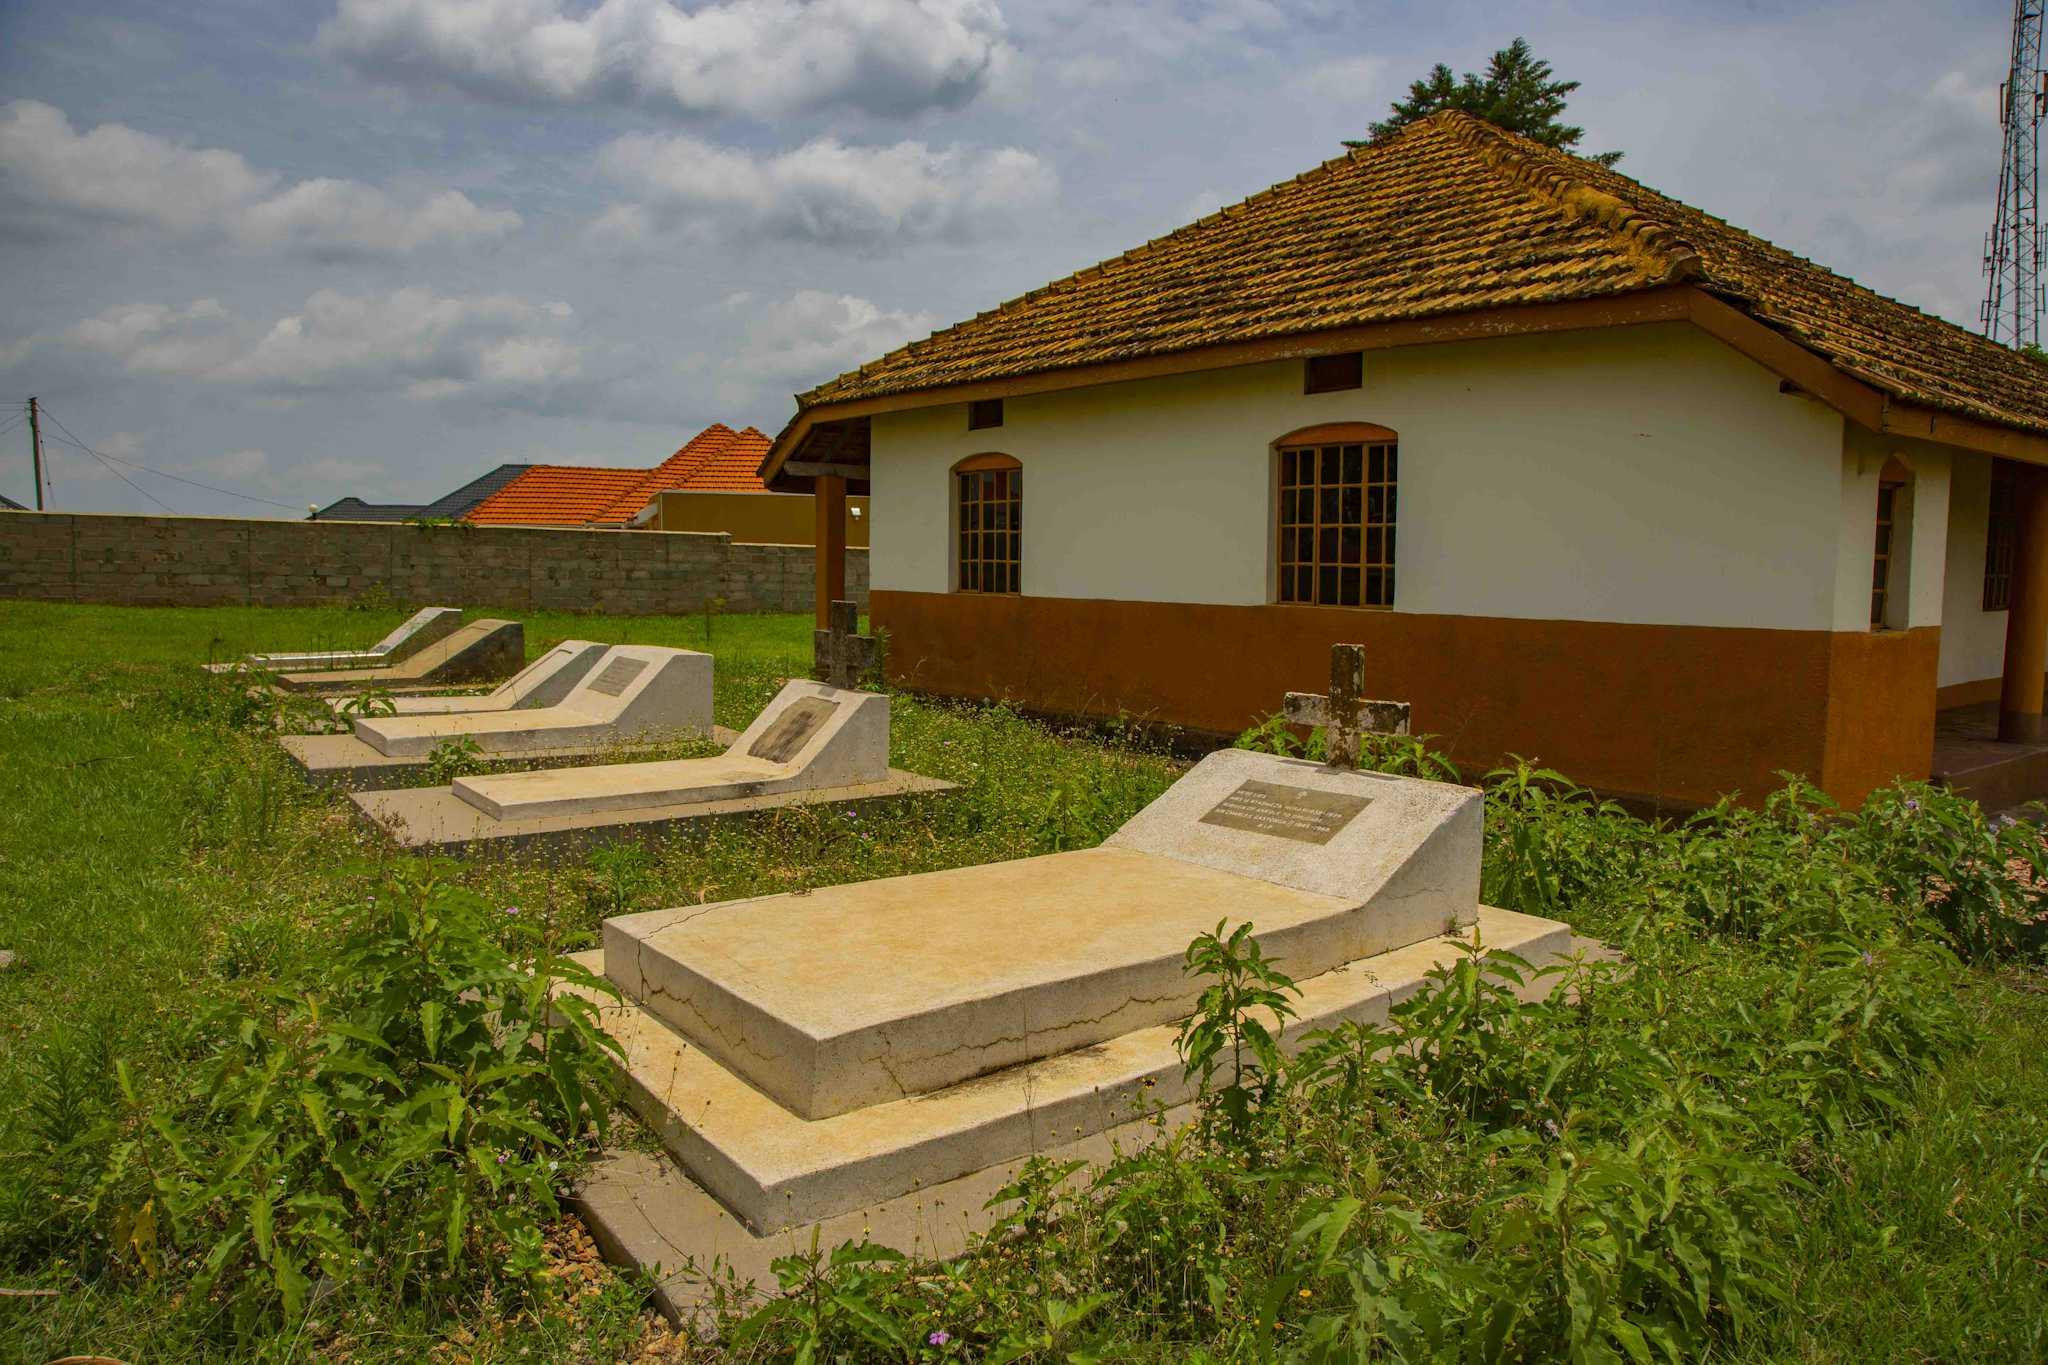 Nkokonjeru Tombs